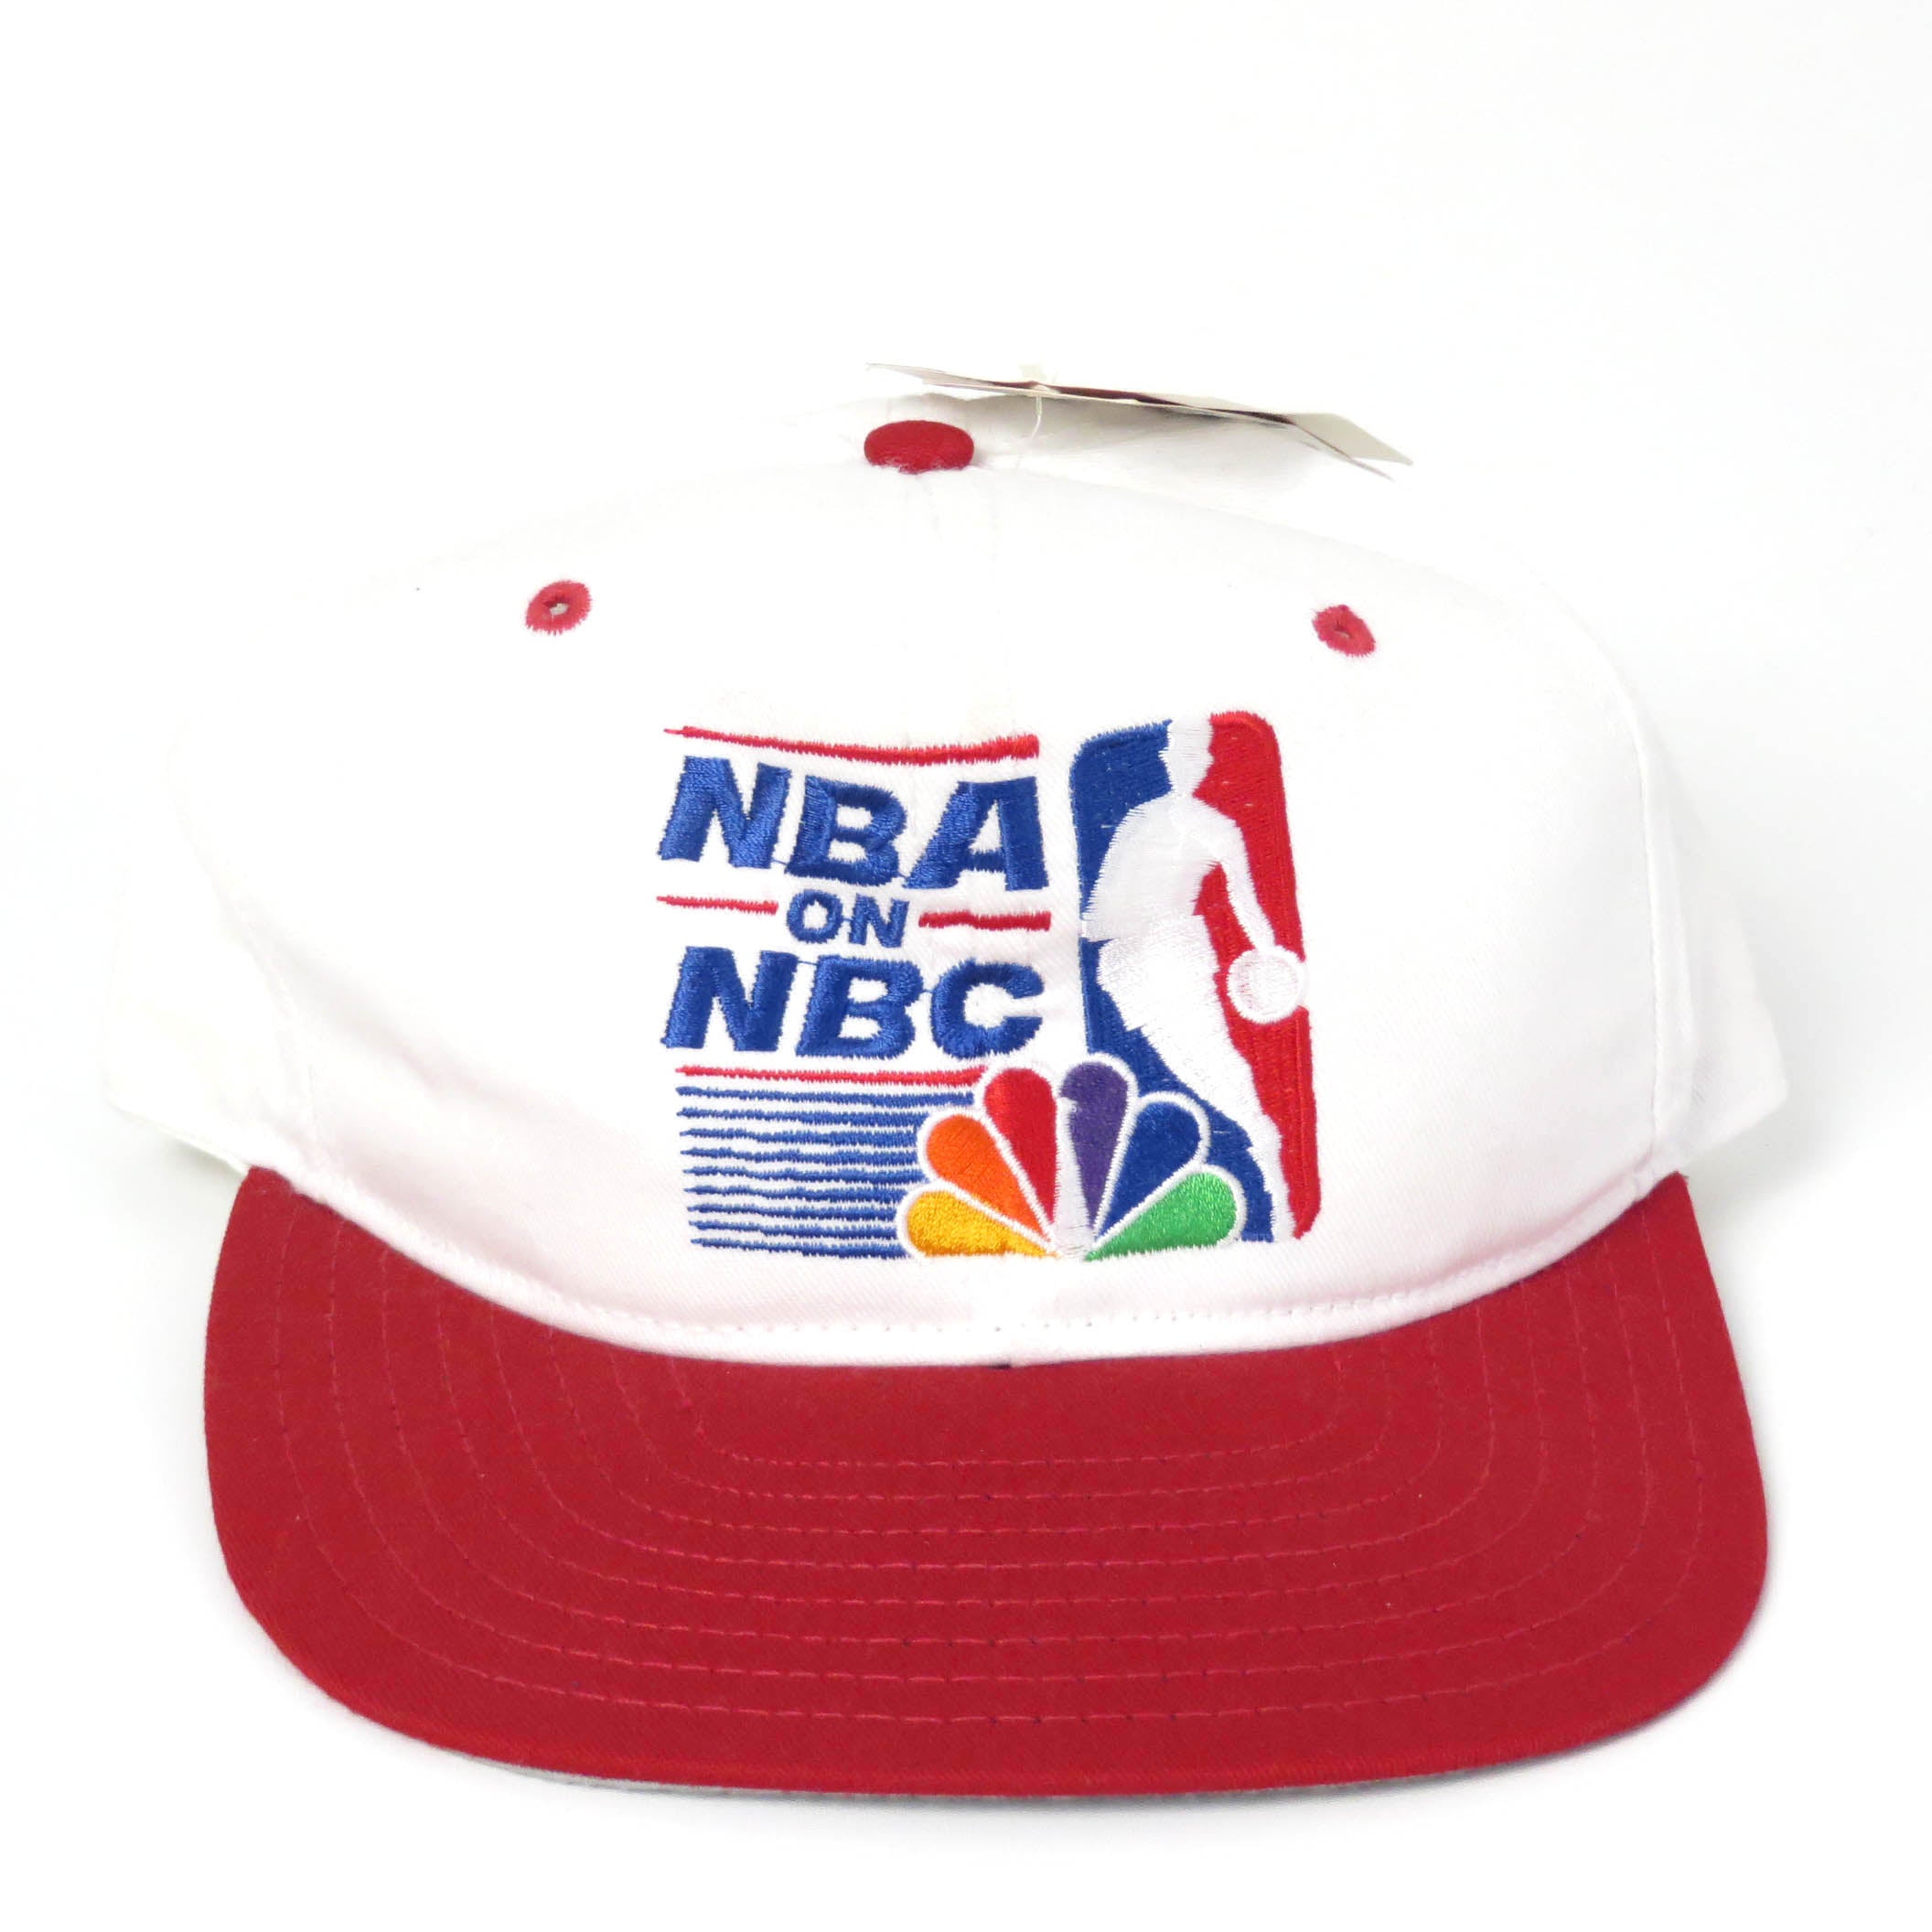 Vintage NBA on NBC Snapback Hat